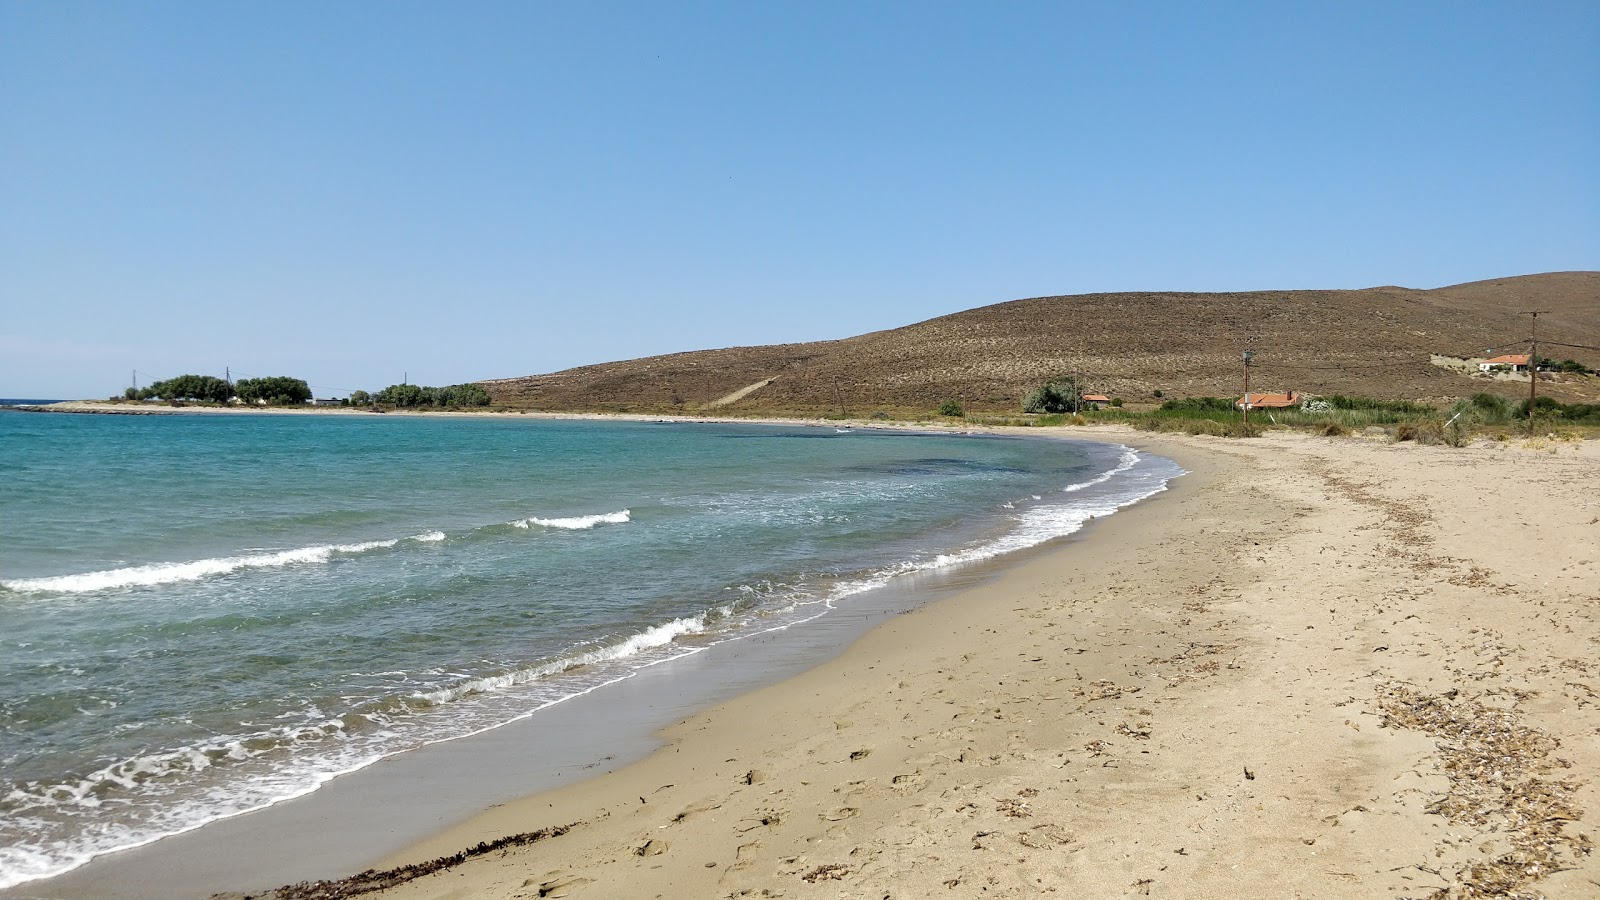 Neftina beach'in fotoğrafı i̇nce kahverengi kum yüzey ile